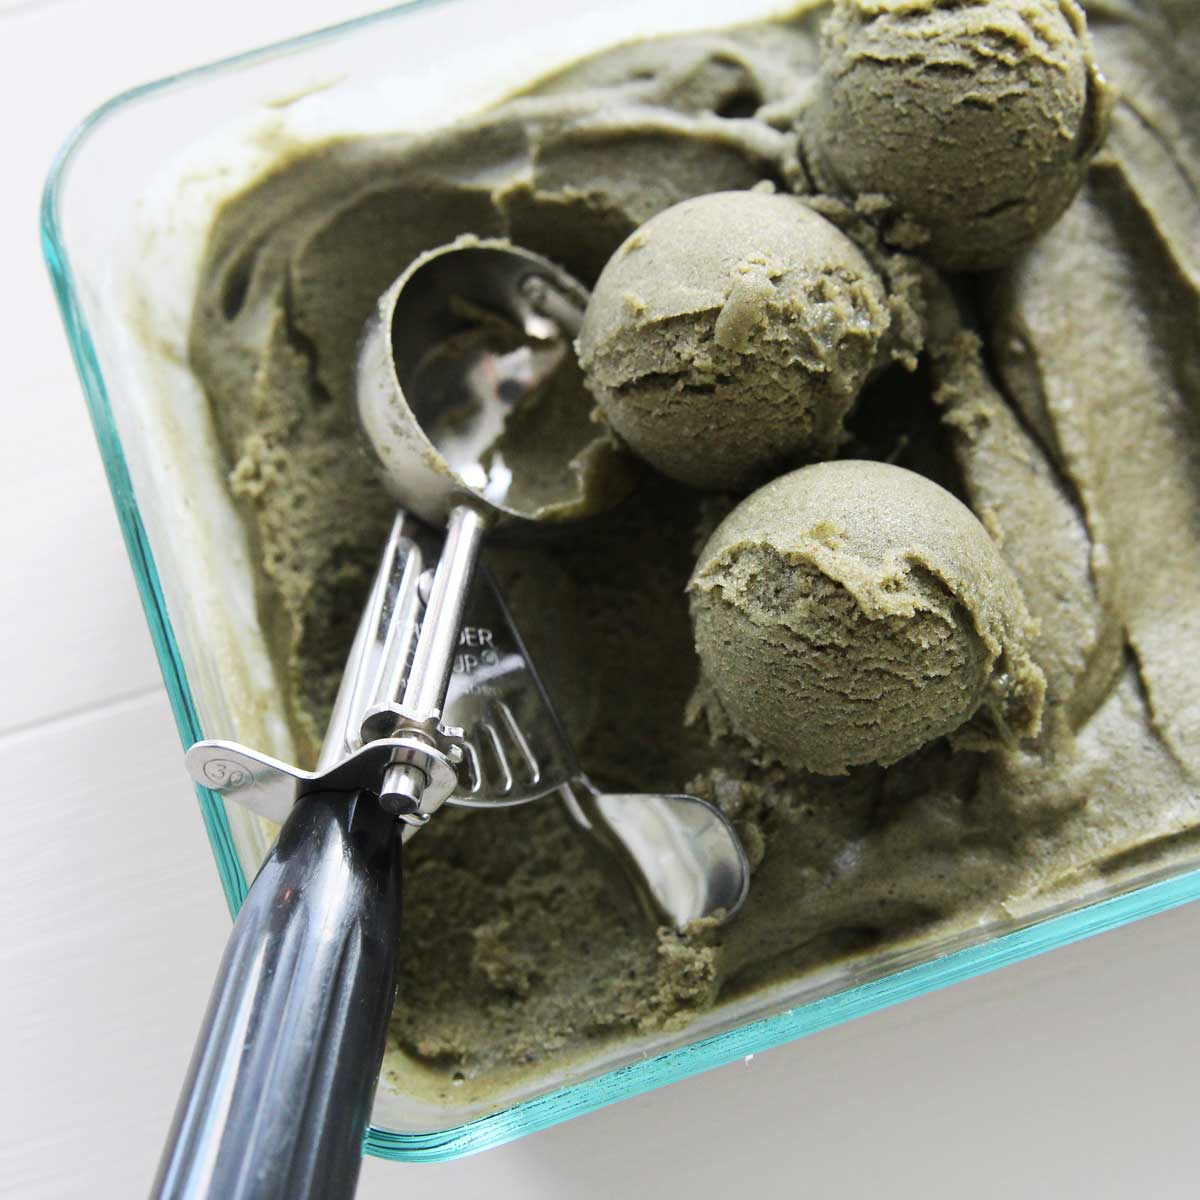 Easy 3-Ingredient Mugwort Ice Cream Recipe - PB Fit Nice Cream